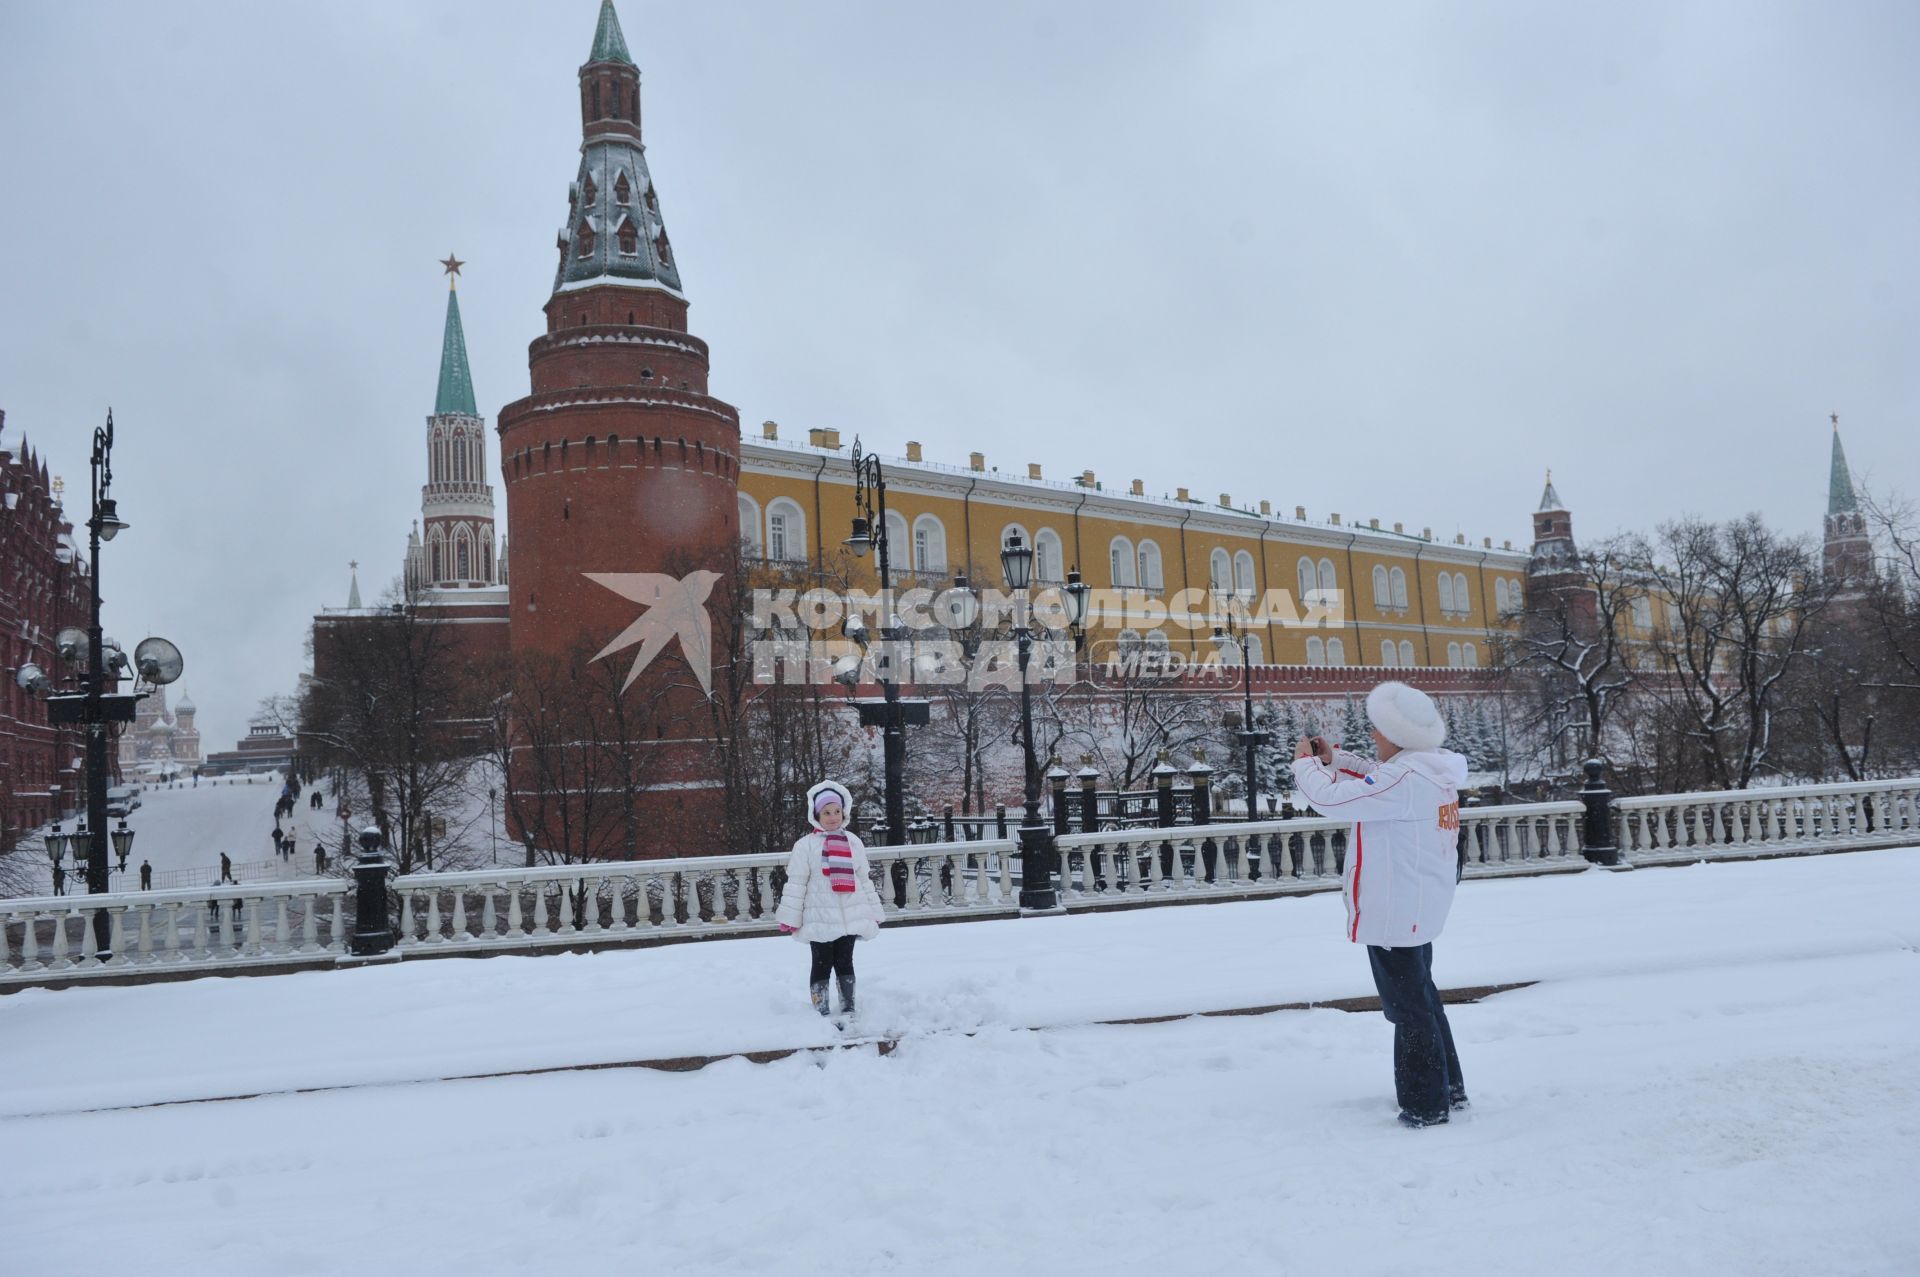 Жанровая фотография. Зимняя прогулка с мамой. На снимке: женщина фотографирует девочку на фоне Кремлевской башни.  Москва. 21 декабря  2011 года.